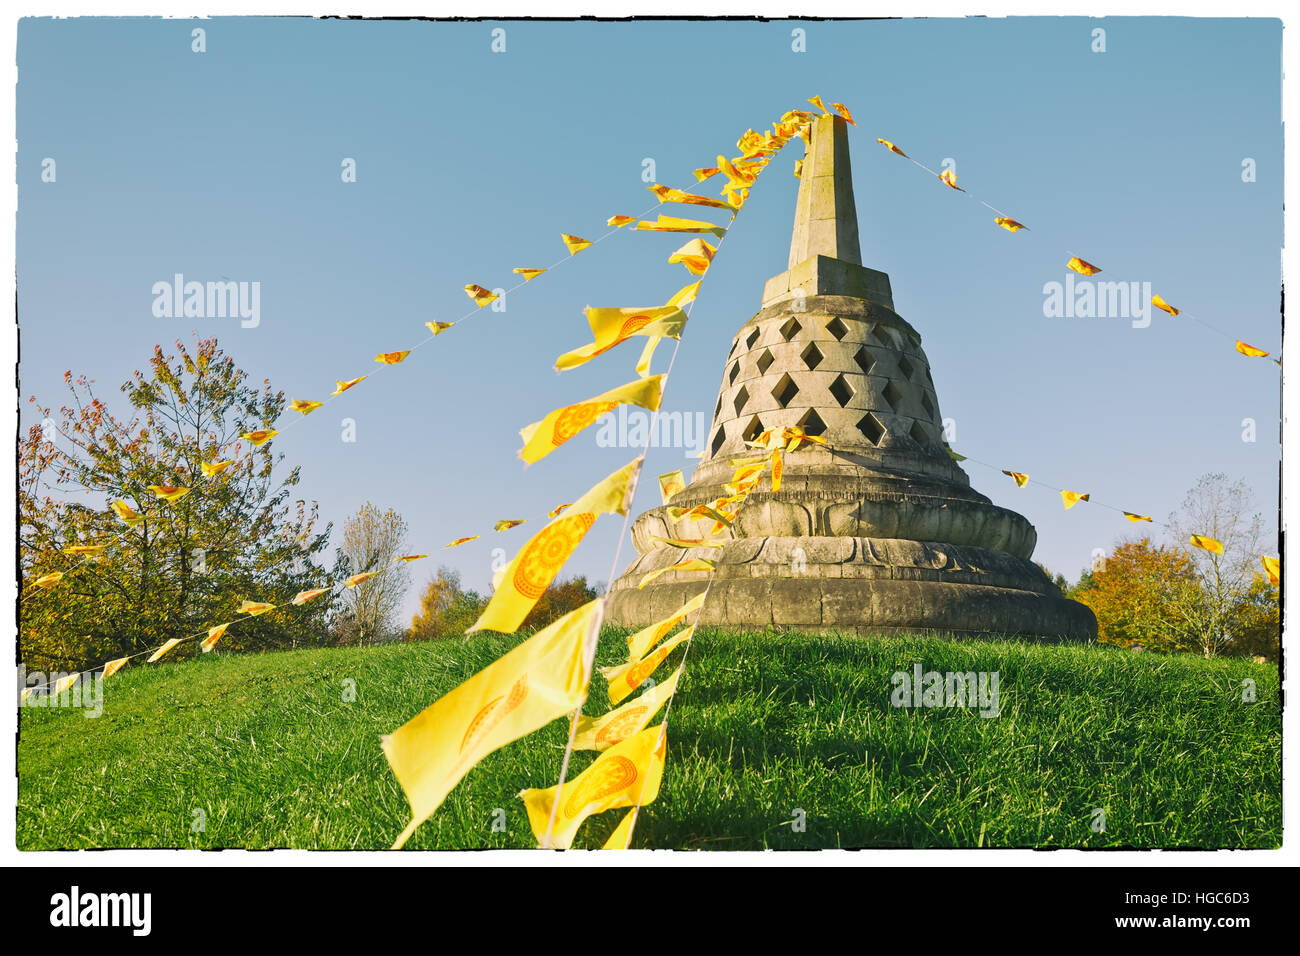 Buddhistische Stupa auf einem Hügel, dekoriert mit buddhistischen Gebetsfahnen, England Stockfoto